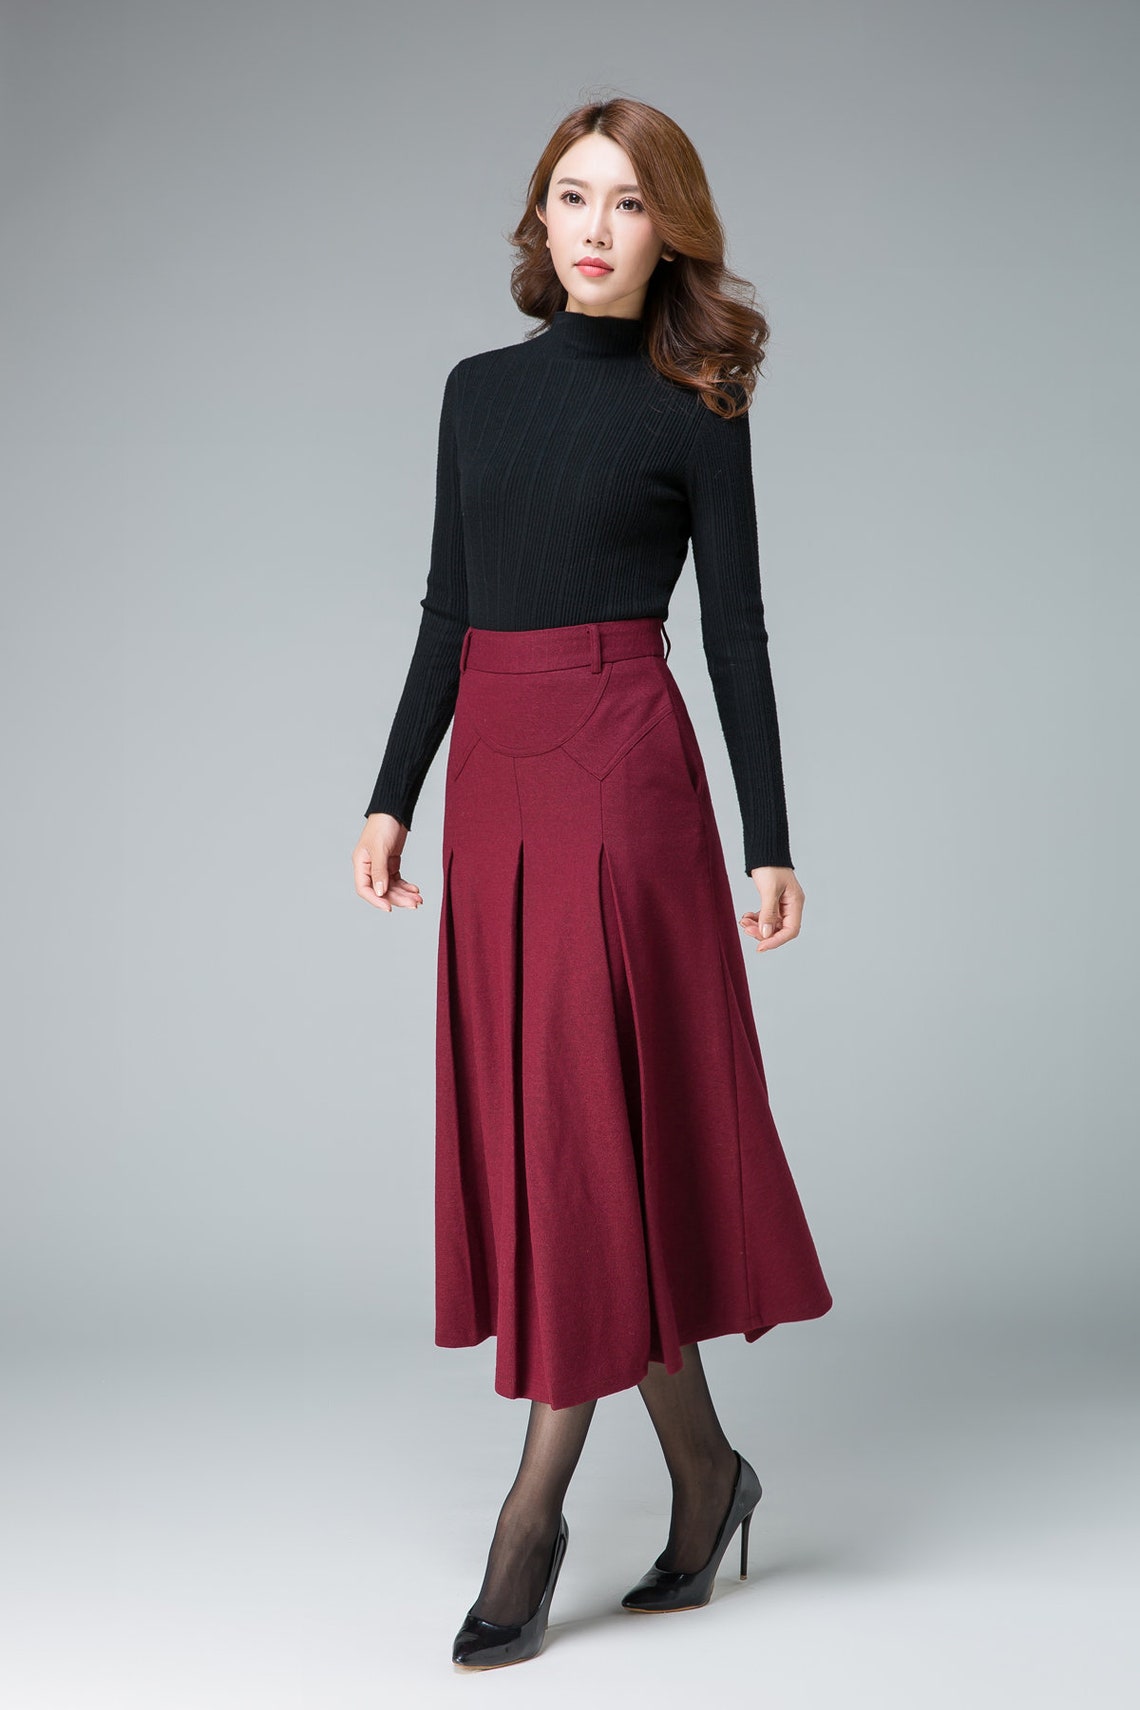 Midi Wool Skirt Red Midi Skirt Office Skirt High Waist - Etsy